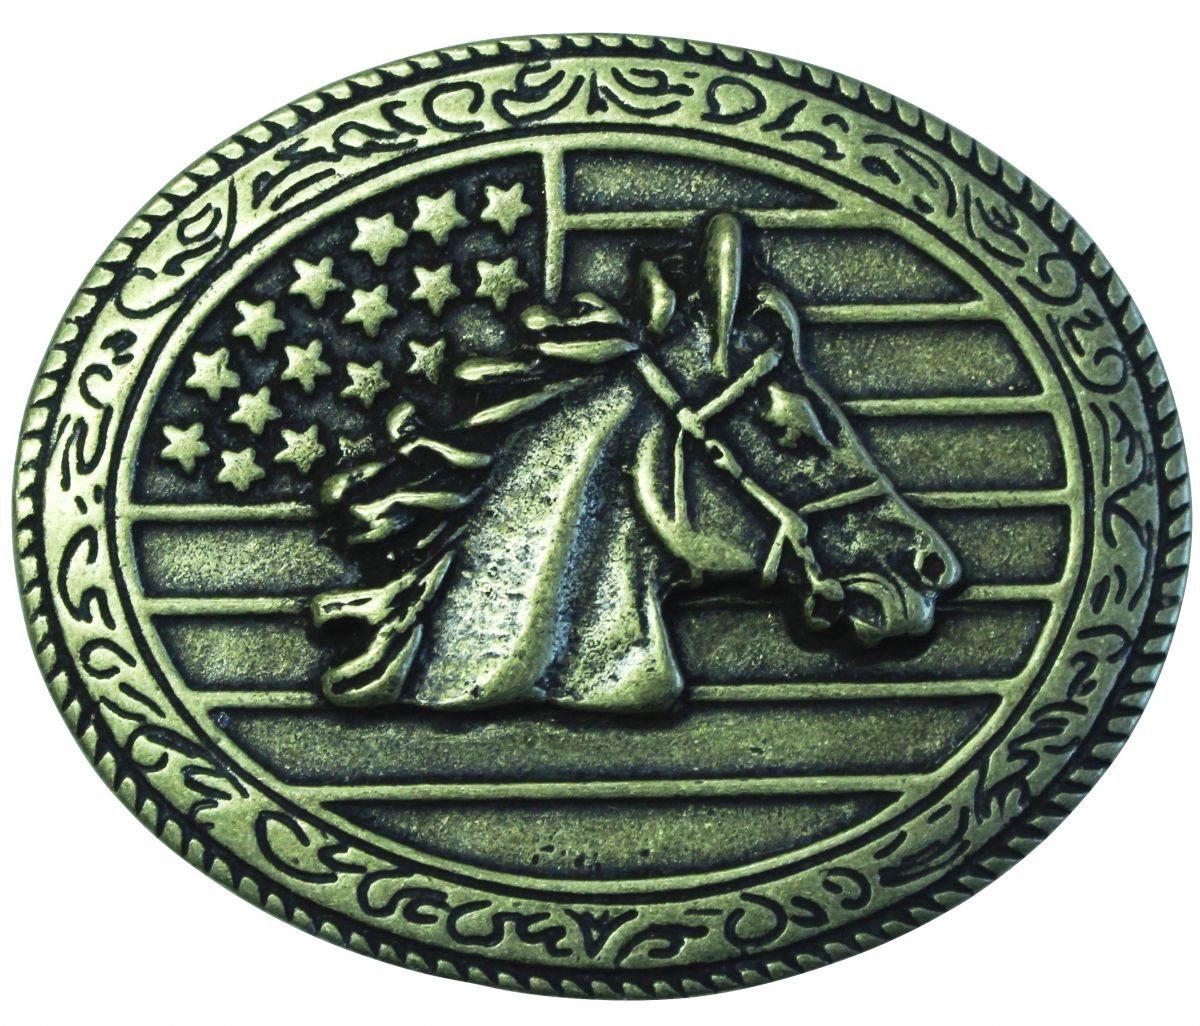 Herren Gürtelschnallen BELTINGER Gürtelschnalle Pferdekopf USA 4,0 cm - Buckle Wechselschließe Gürtelschließe 40mm - für Western